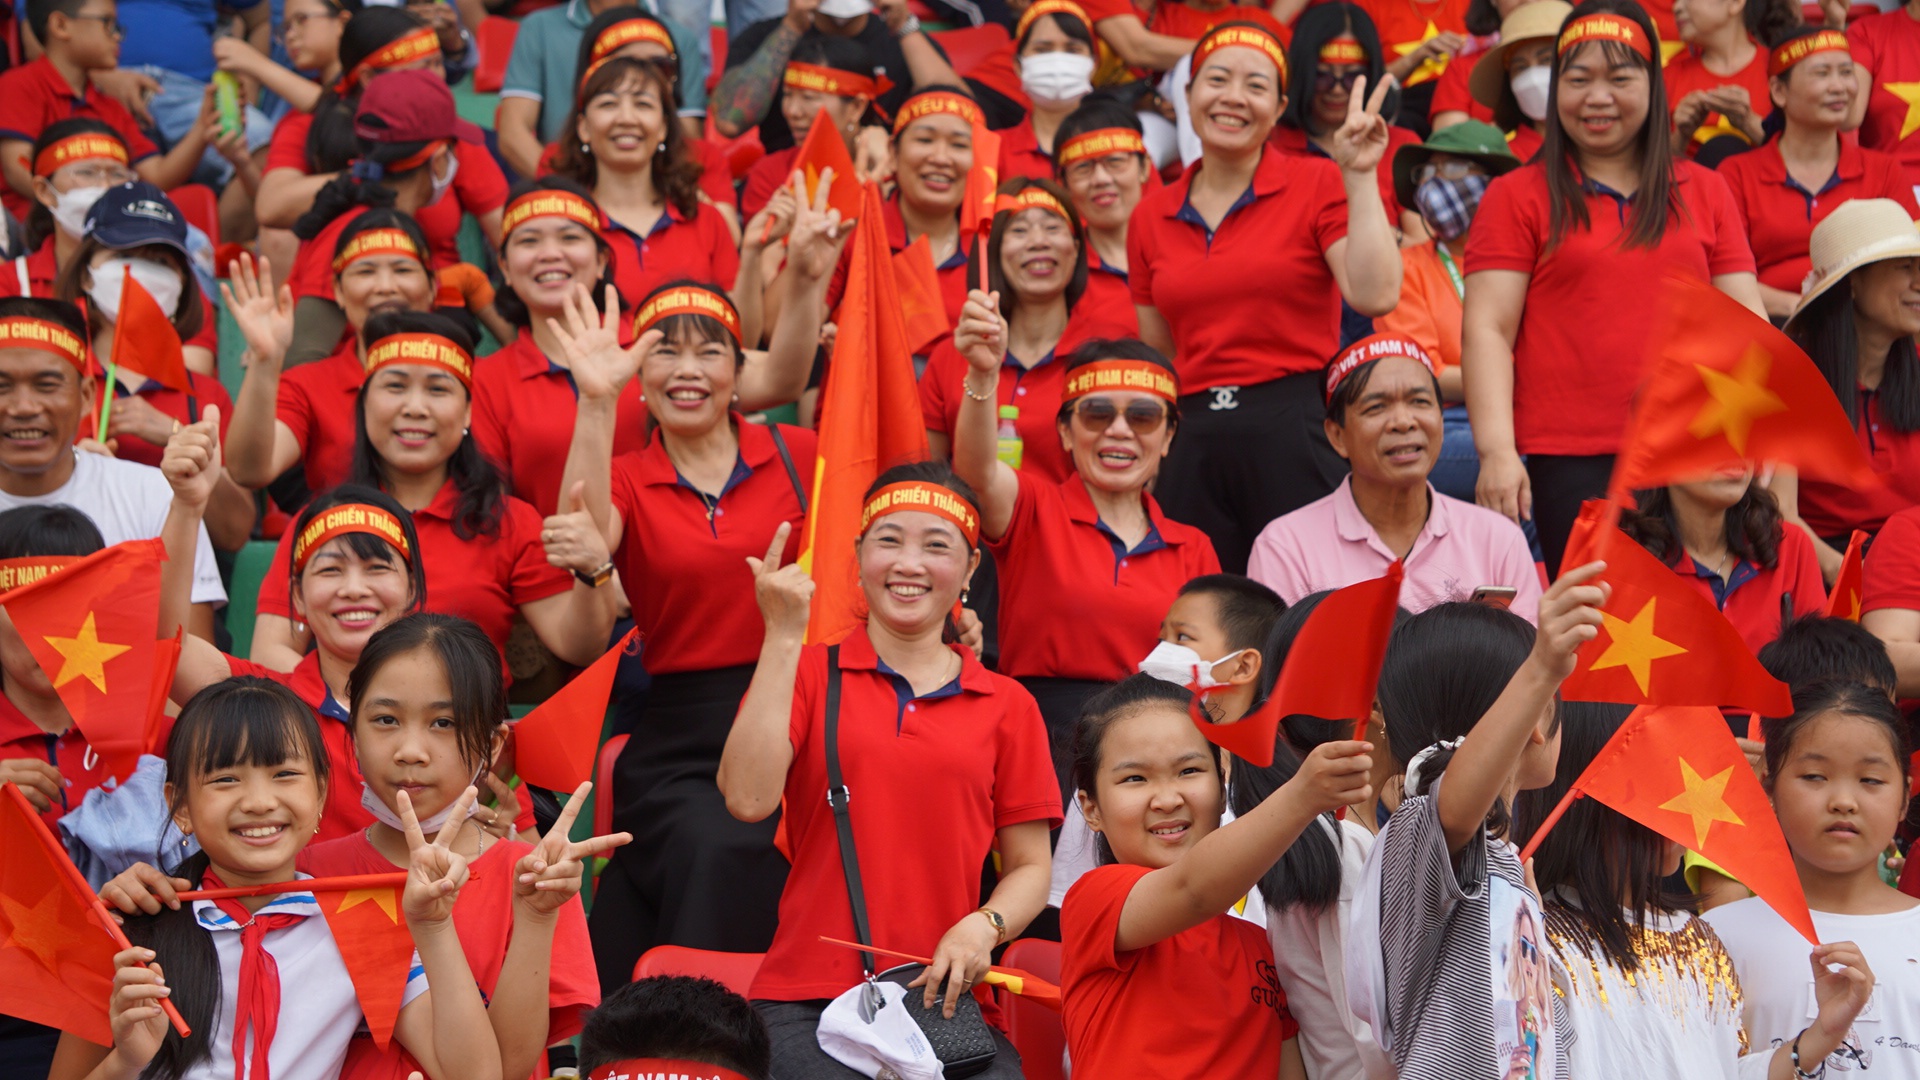 Giành 8 huy chương vàng ở SEA Games 31, Rowing nữ Việt Nam vui sướng ăn mừng trong vòng tay của hàng ngàn khán giả - Ảnh 2.